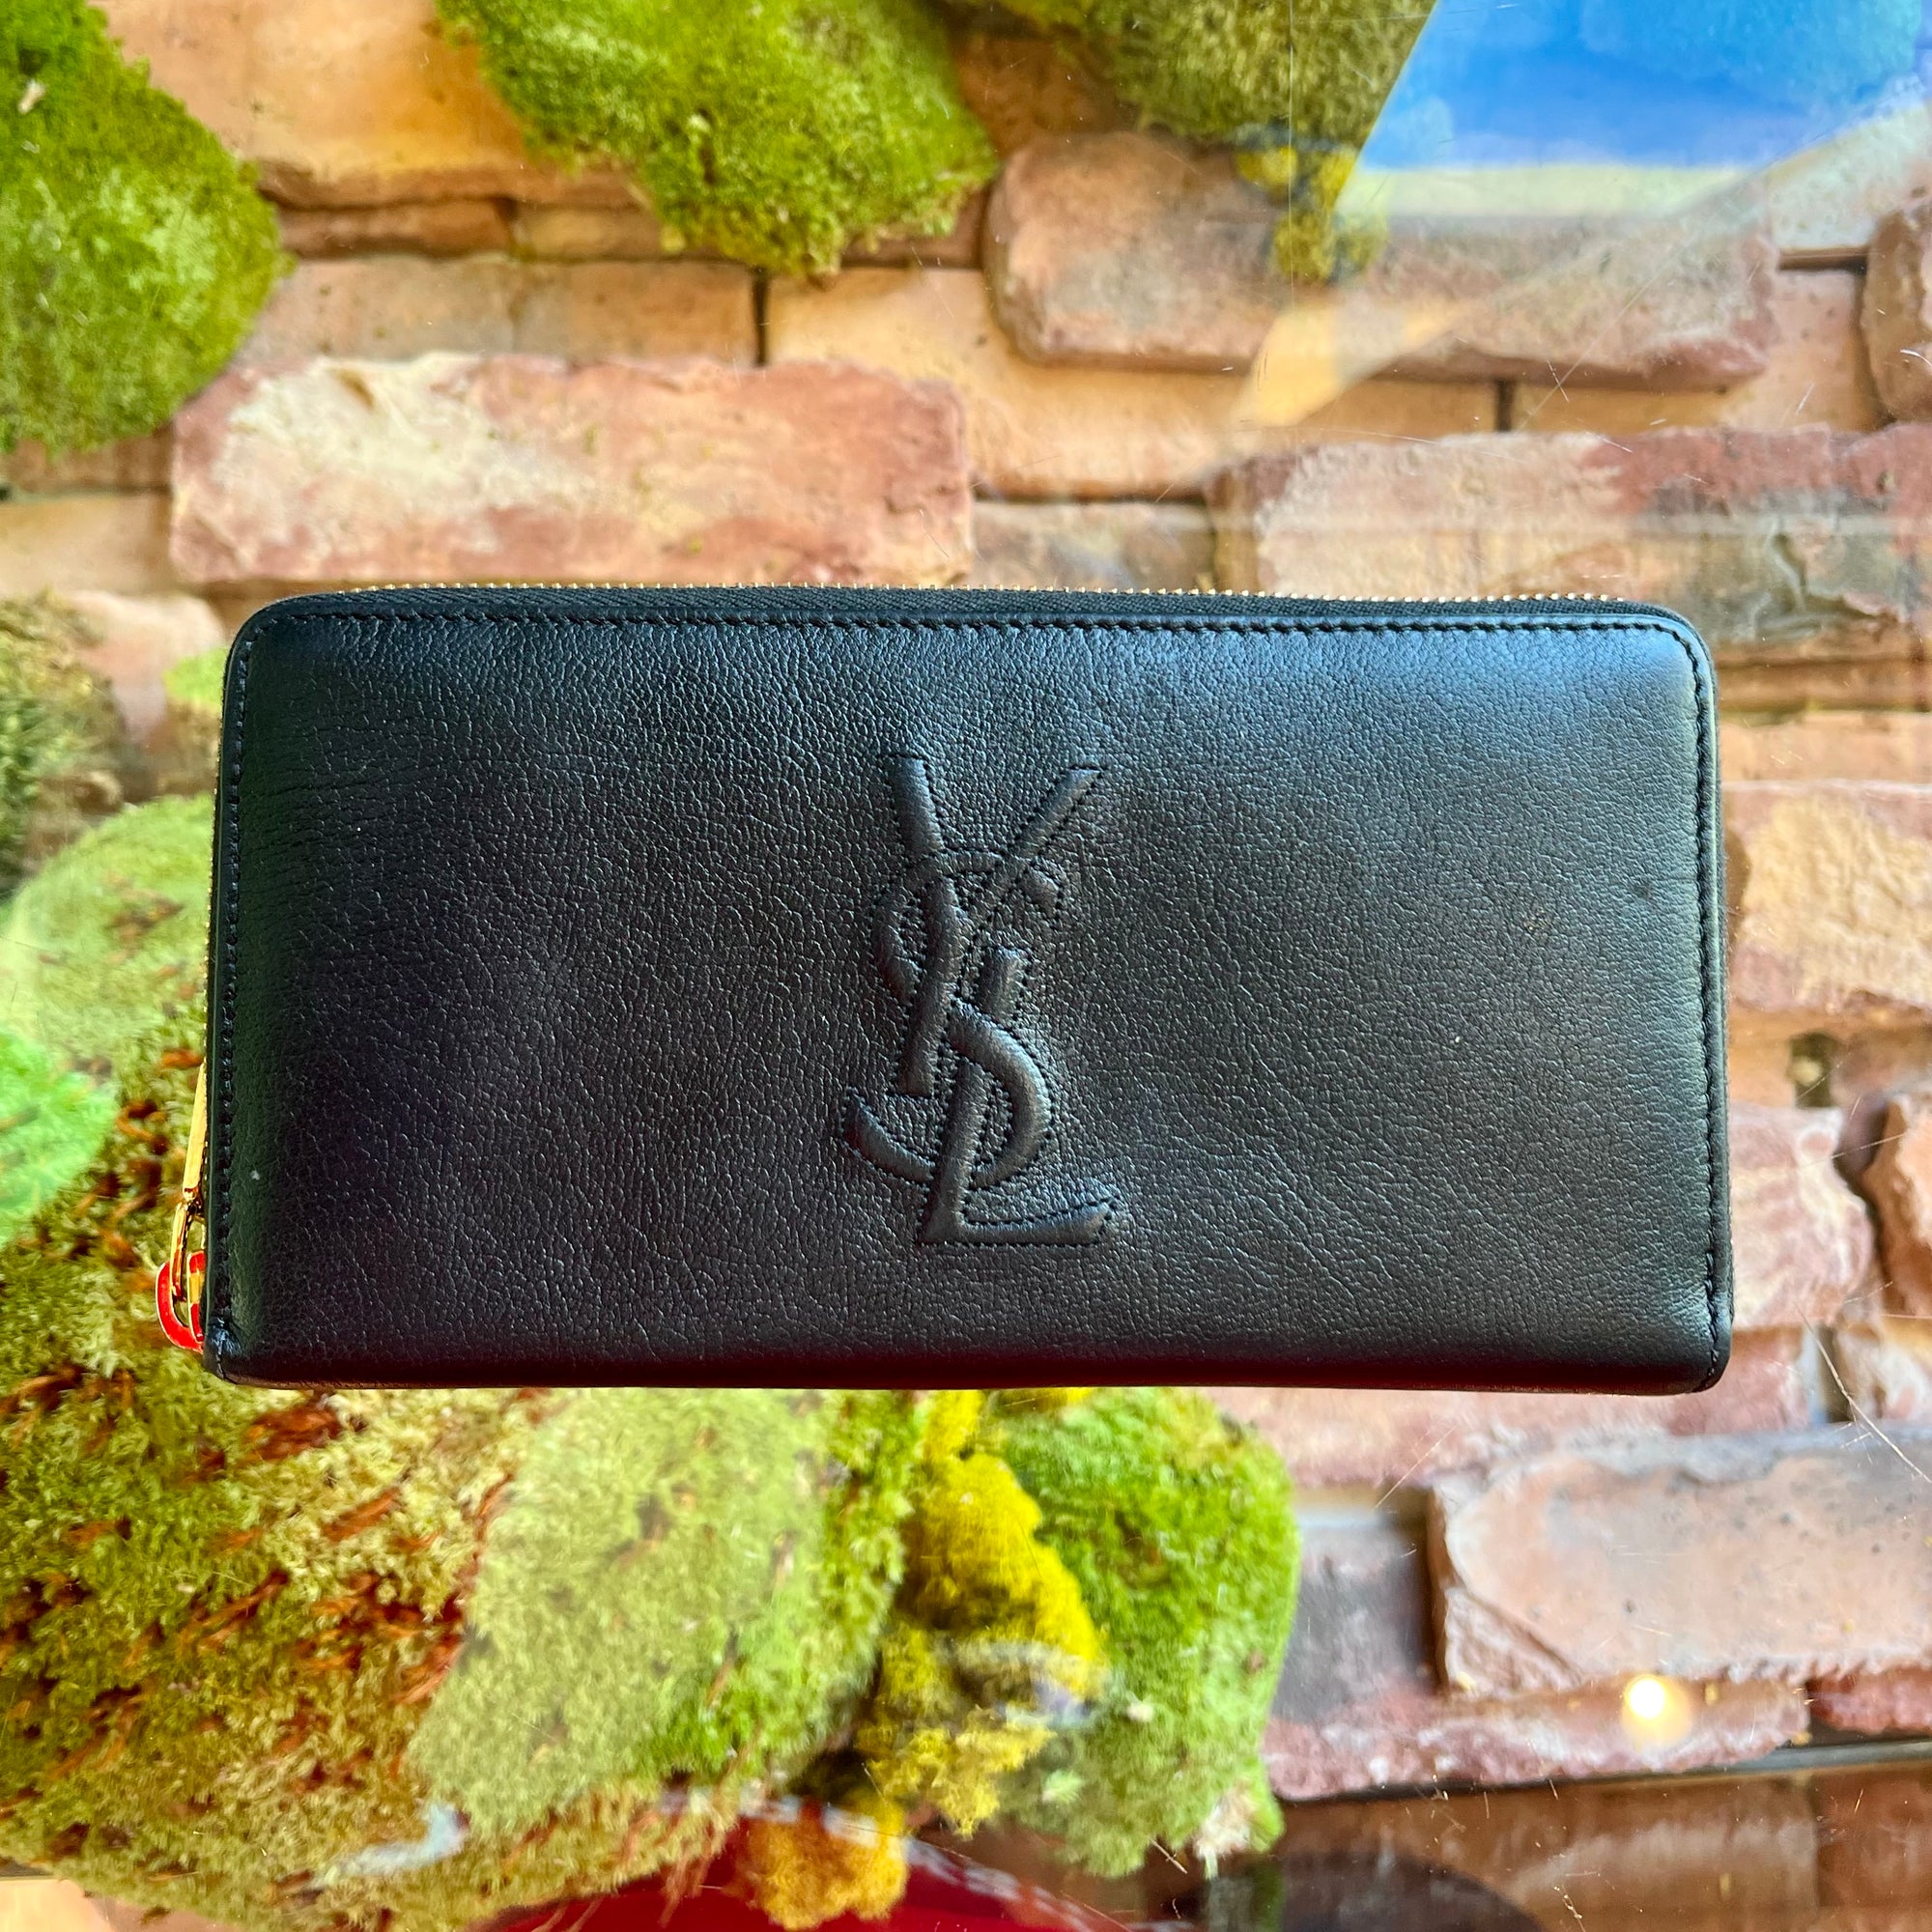 Yves Saint Laurent (Ysl) Belle de Jour Leather Compact Zip Wallet Black